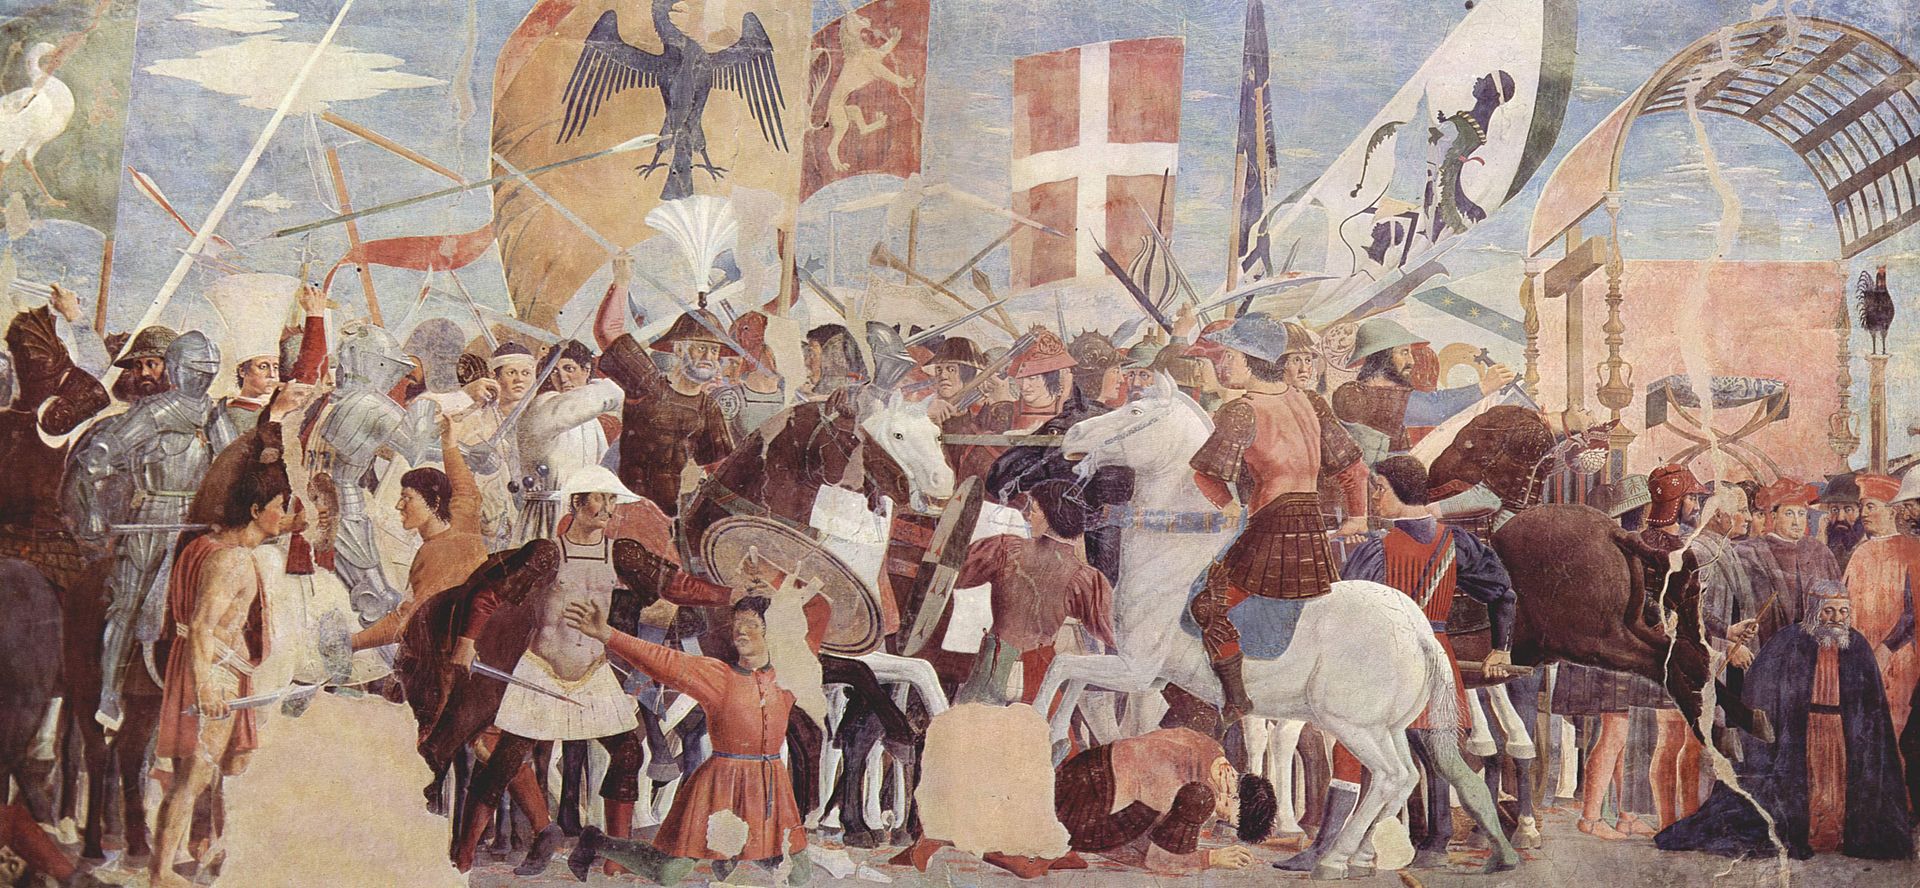 Hérakleiosz serege megvív a perzsákkal – Piero della Francesca képe a 15. század közepéről